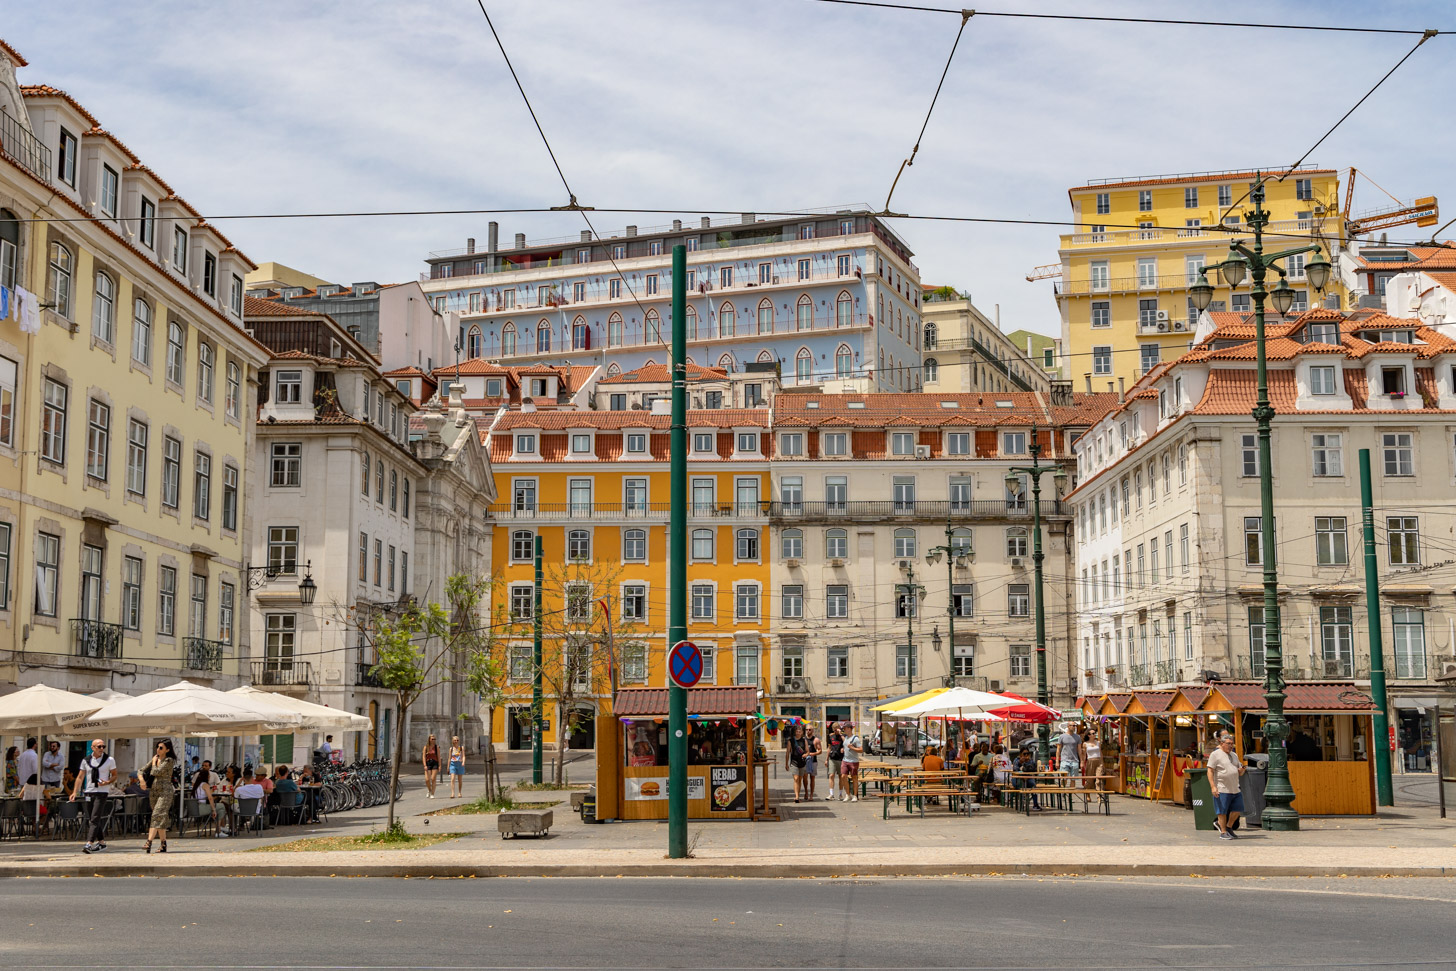 Lissabon in 24 foto's